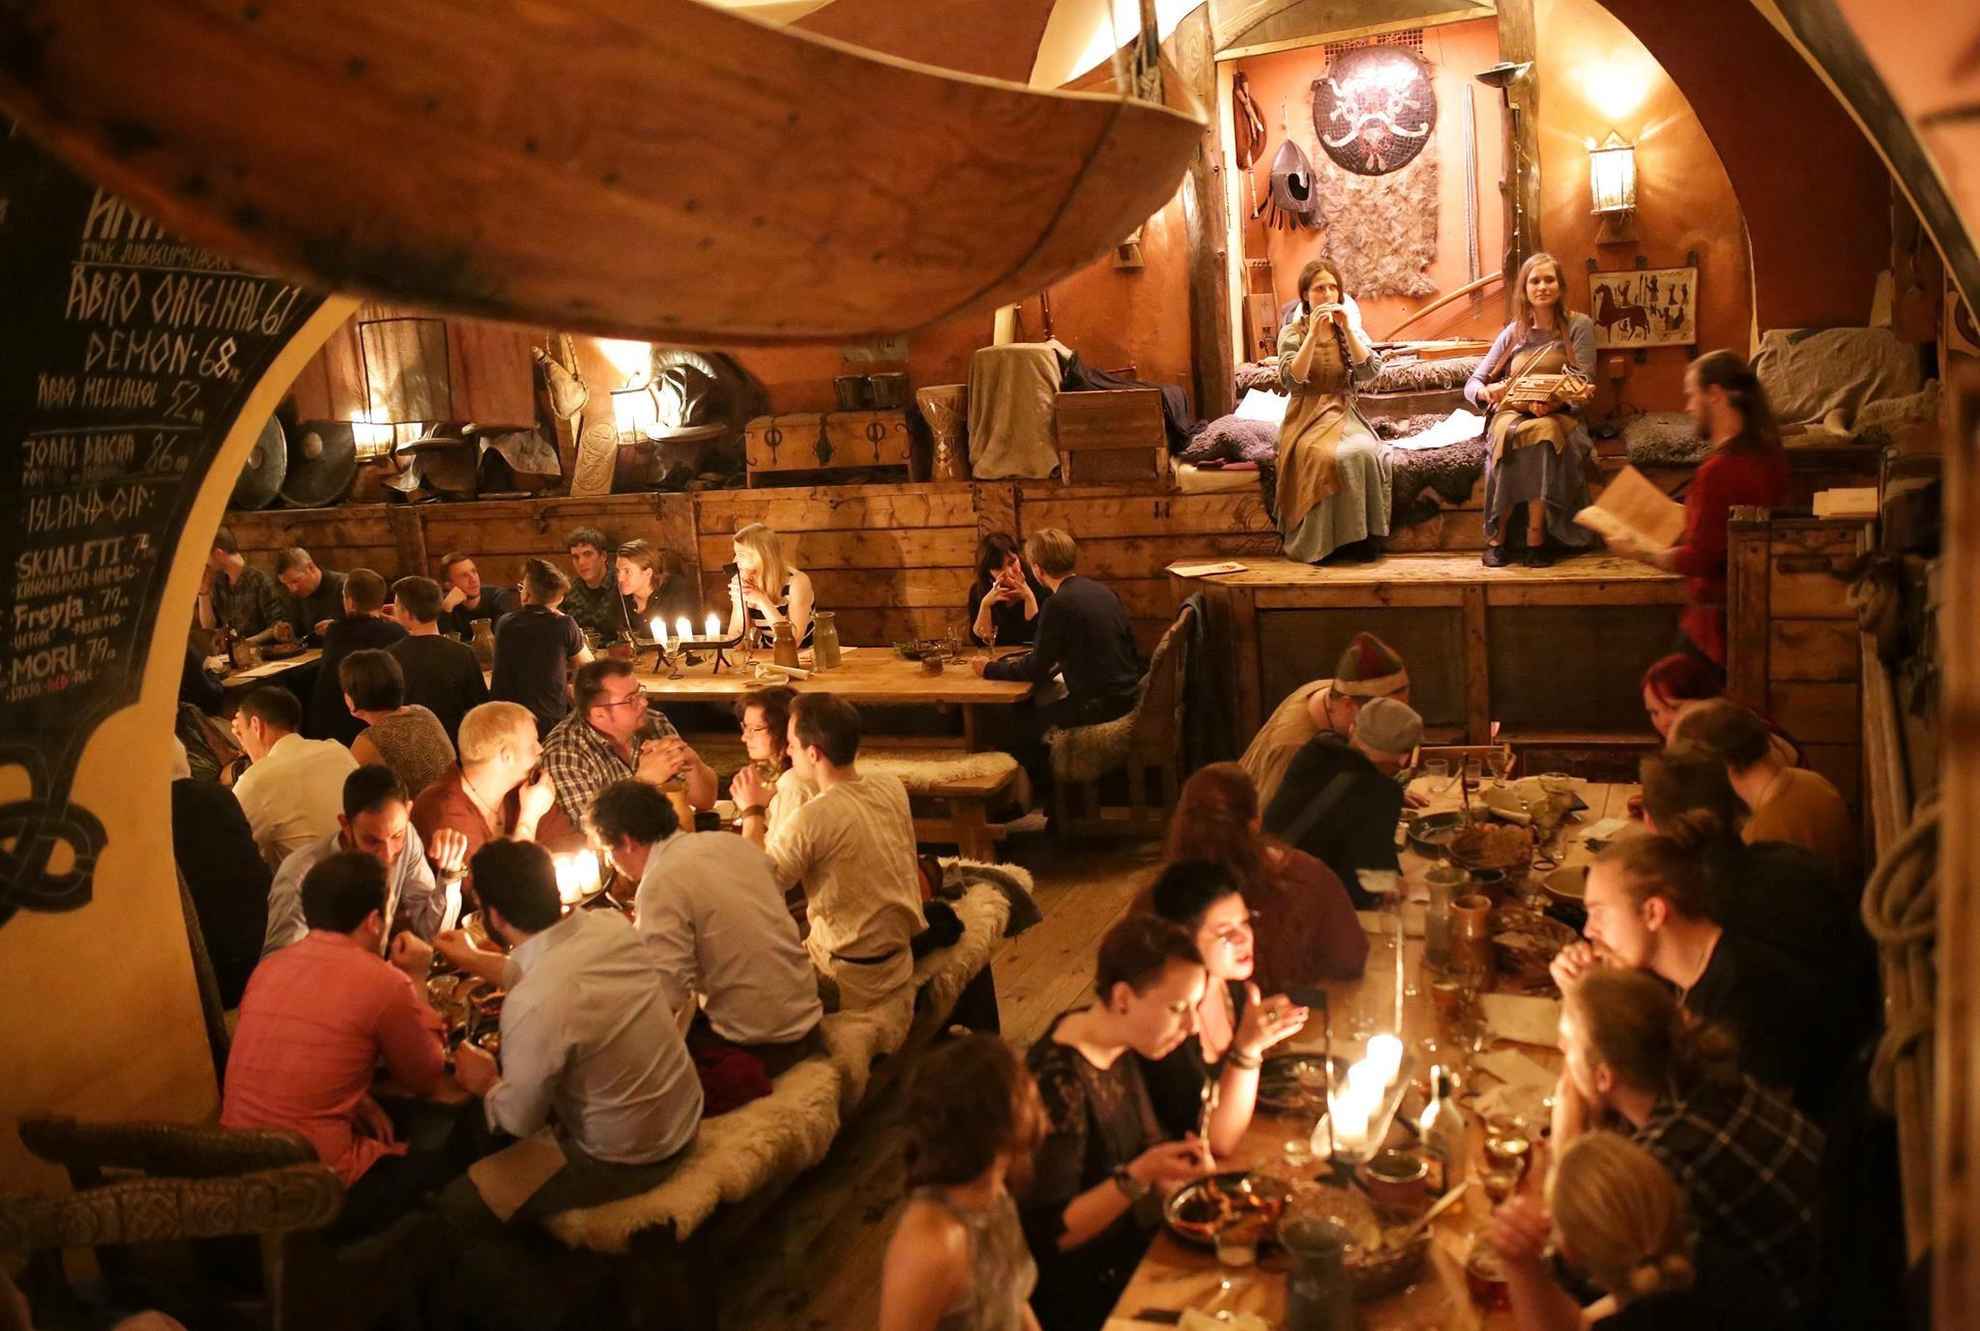 Un restaurant sur le thème des vikings rempli de monde. Sur la petite scène, deux femmes jouent de la musique.